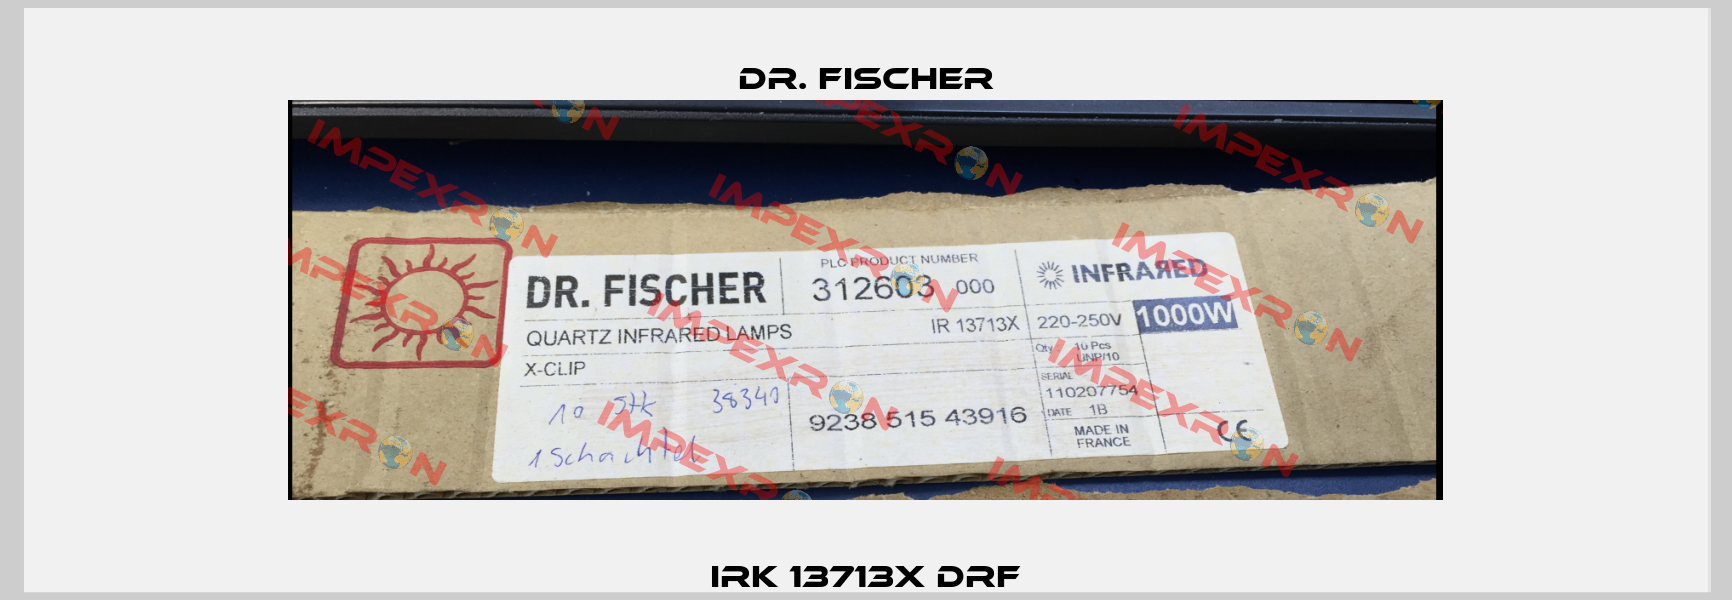 IRK 13713x DRF Dr. Fischer